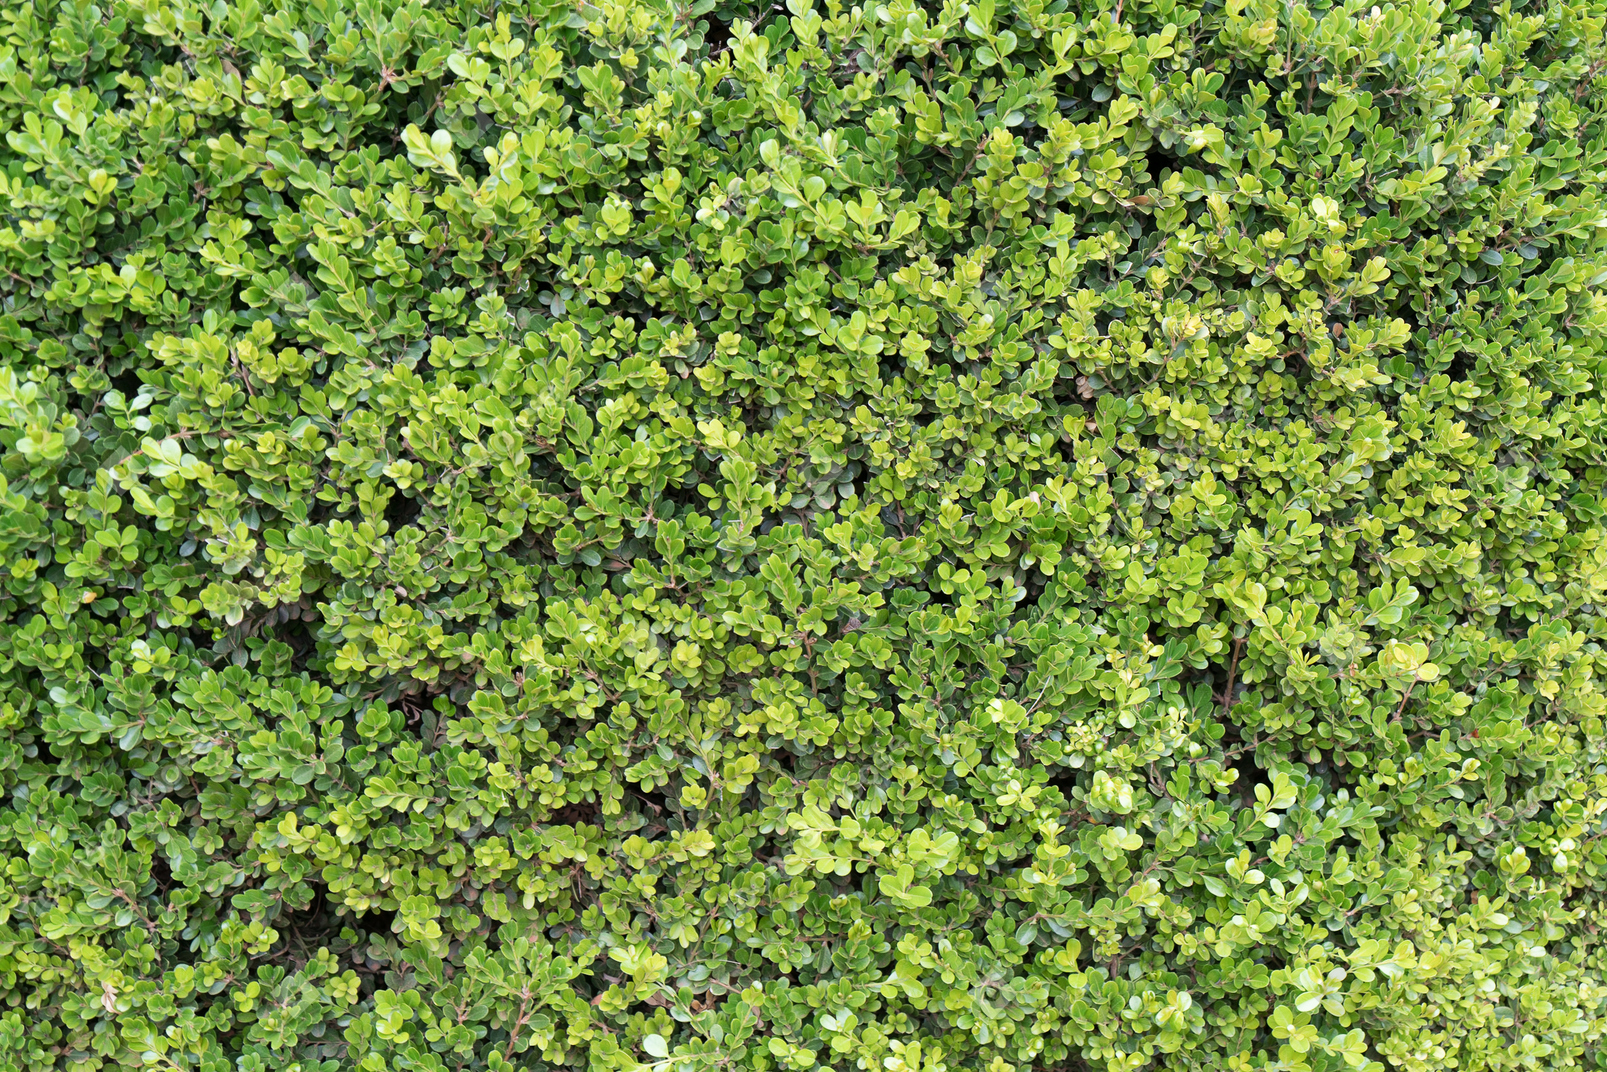 Carpet of green leaves